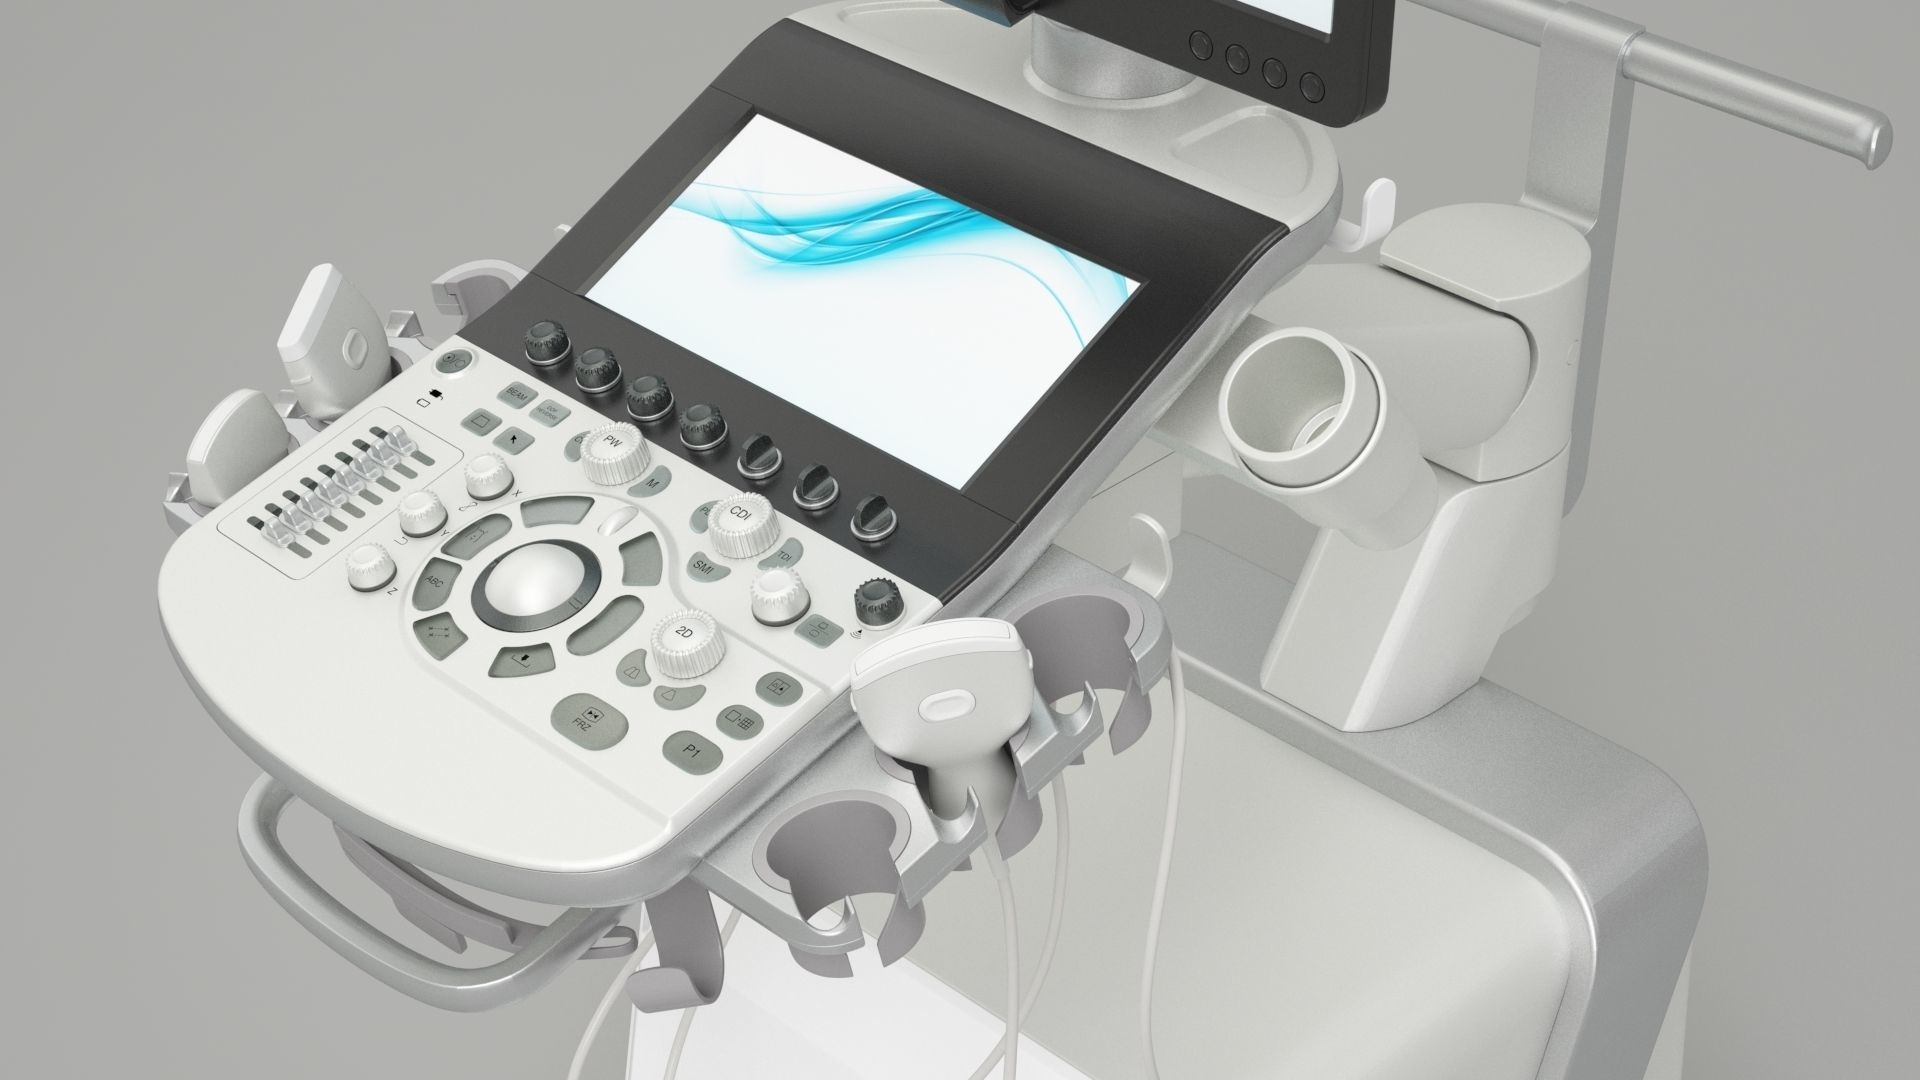 ultrasound-machine-toshiba-aplio-i800-3d-model-max-obj-fbx-c4d-mtl